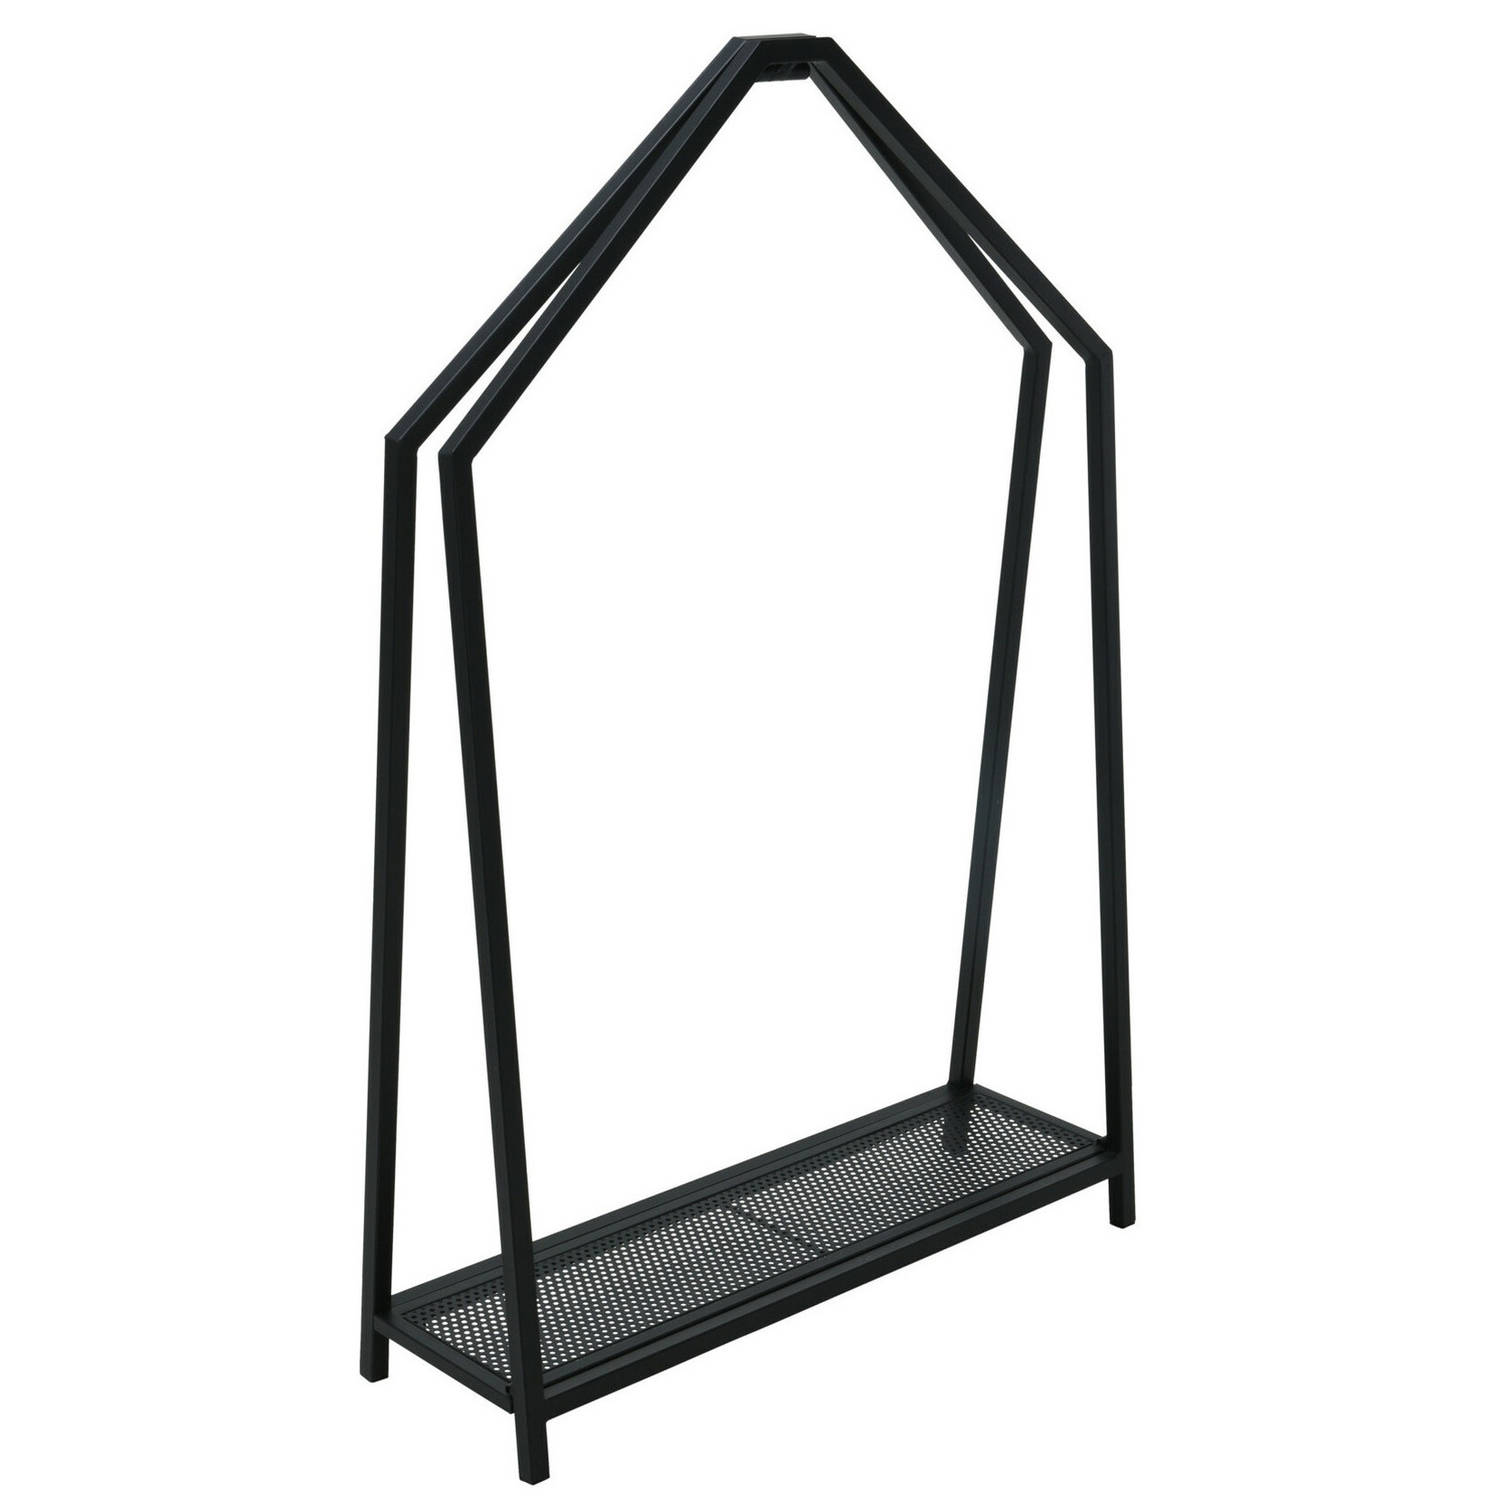 Pro Garden Haardhout/houtblokken opslag rek - metaal - zwart - 78 x 24 x 12 cm - Openhaard accessoires